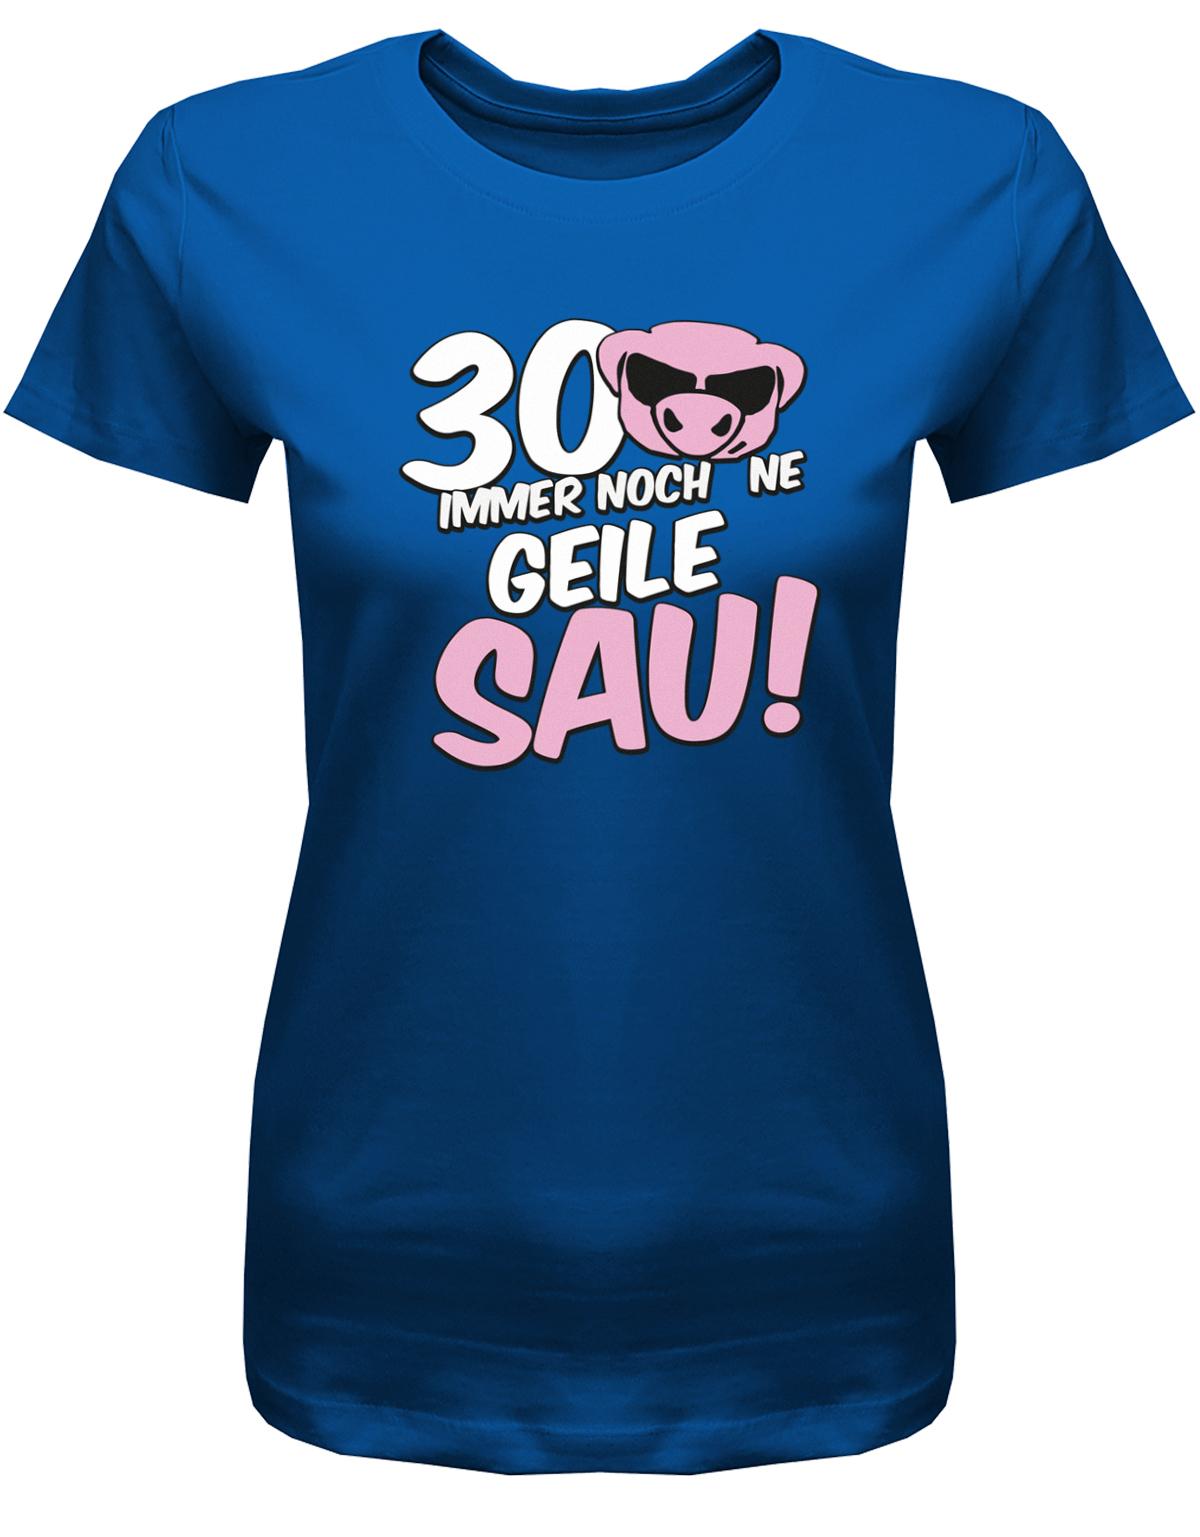 Lustiges T-Shirt zum 30 Geburtstag für die Frau Bedruckt mit 30 Immer noch 'ne geile Sau! Sau mit Sonnenbrille Royalblau